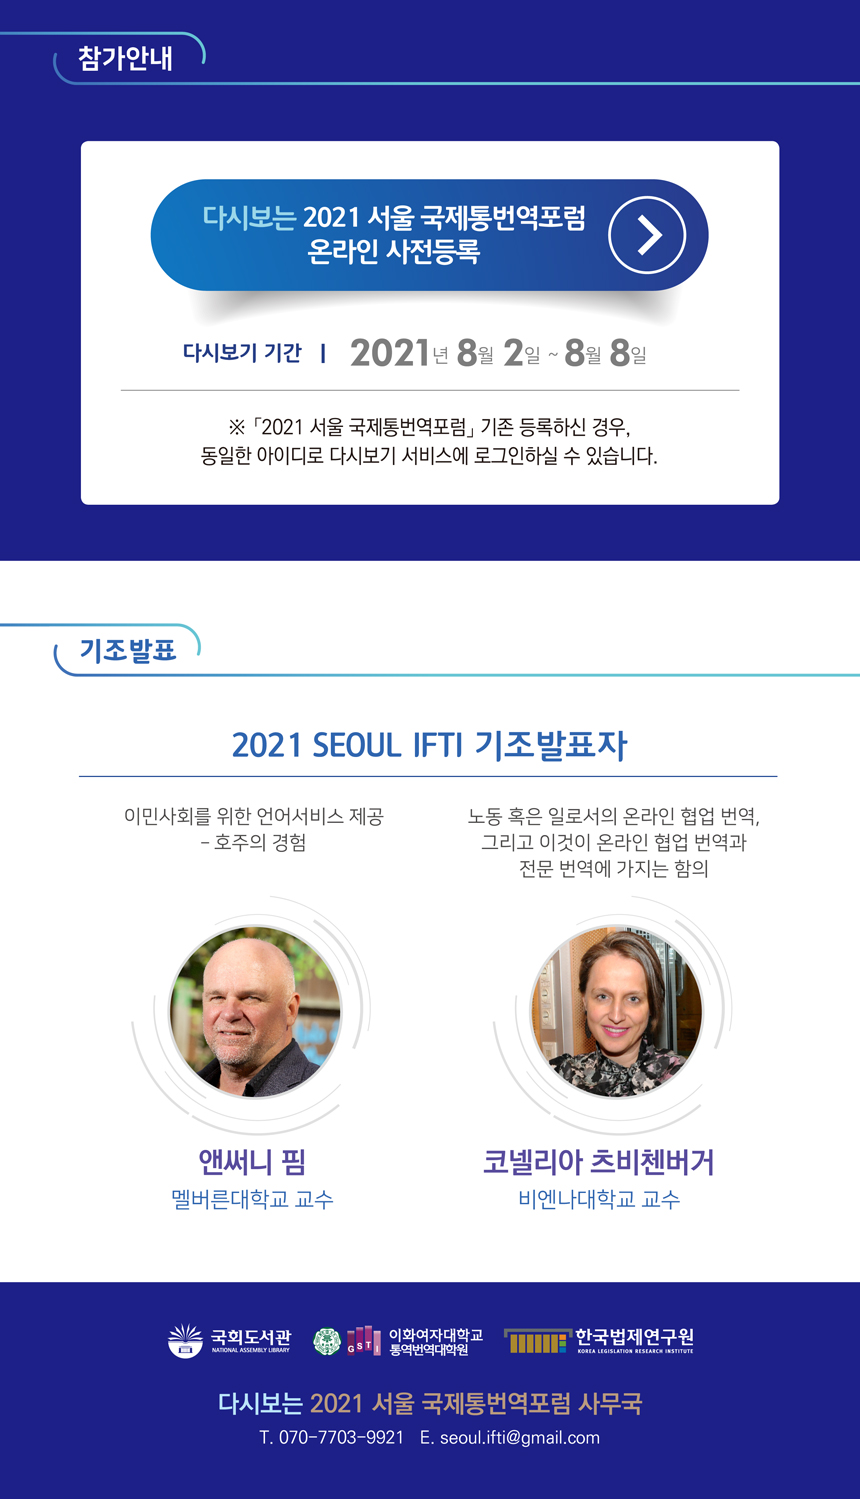 AGAIN 2021 Seoul IFTI 3